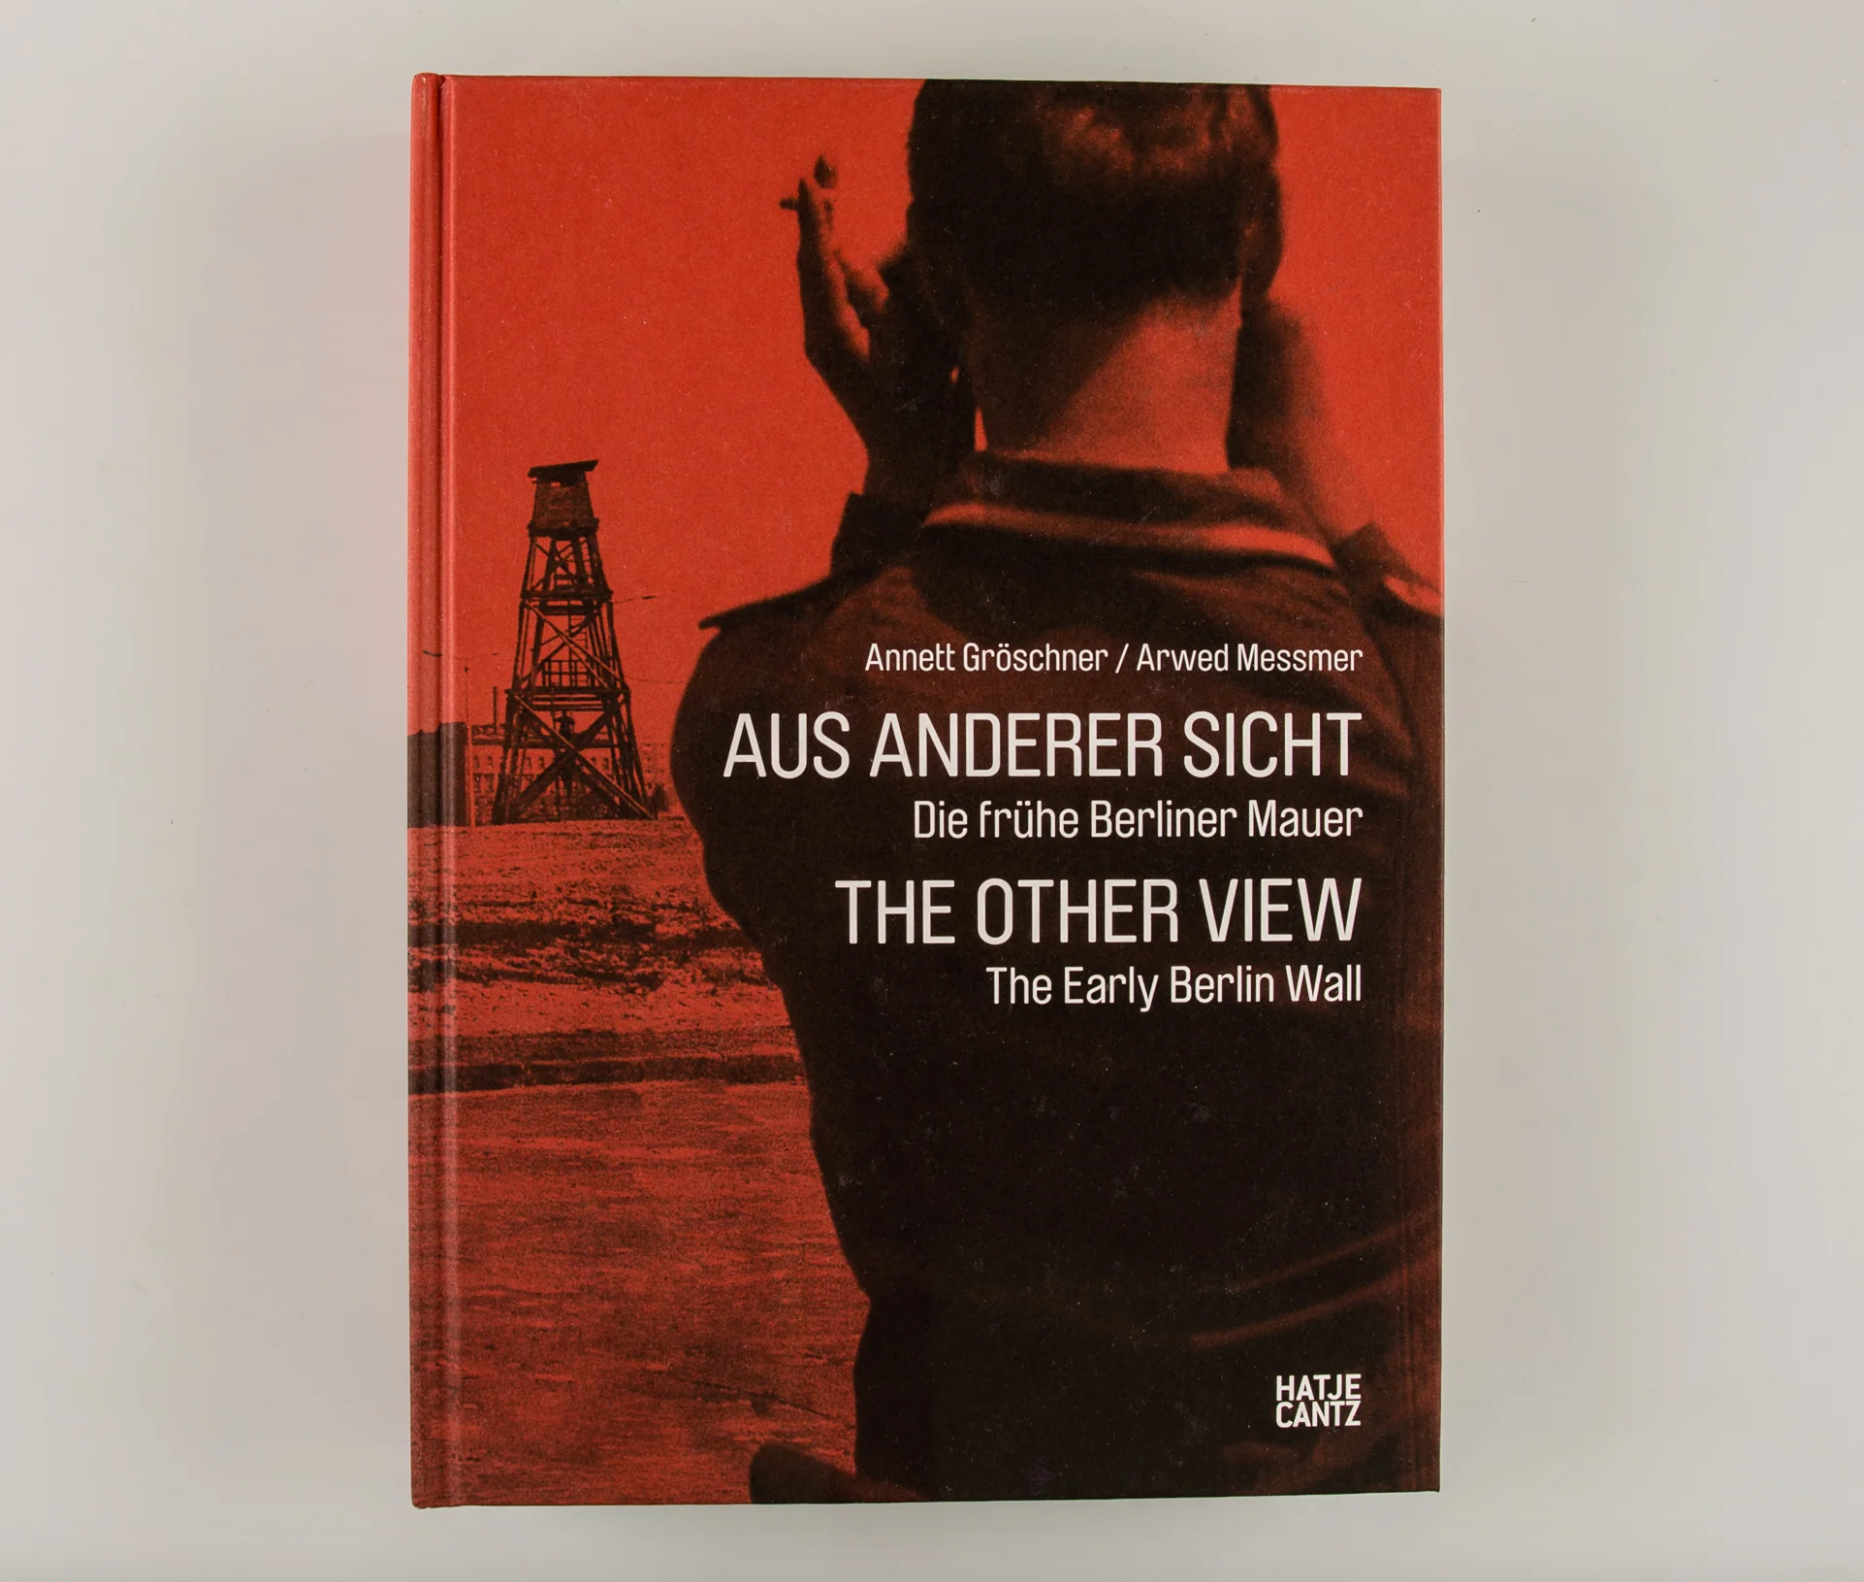 Annett Gröschner - The Other View